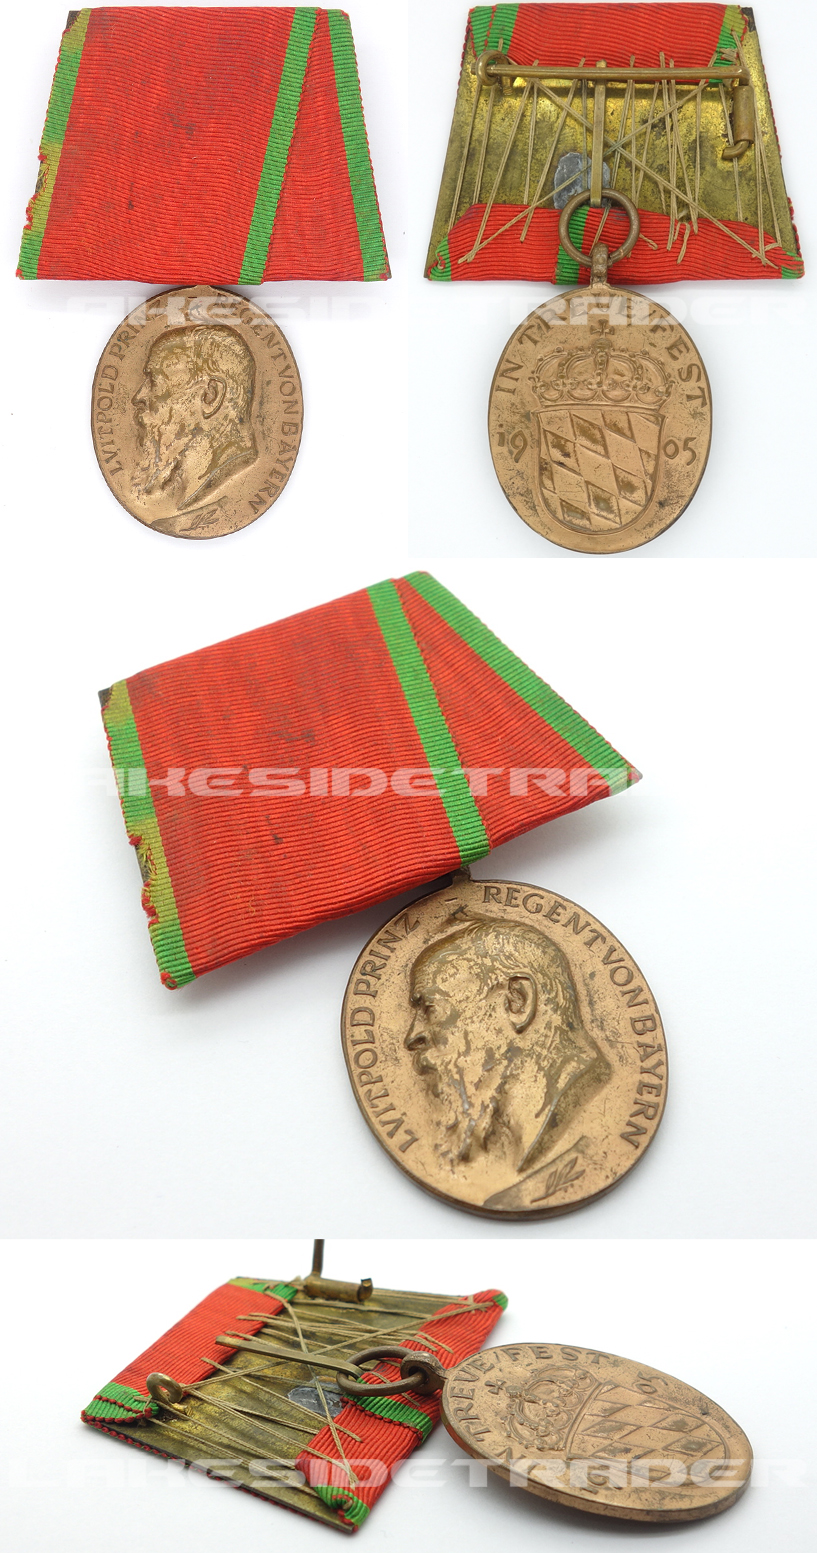 Prince Regen Luitpold Medal in Bronze